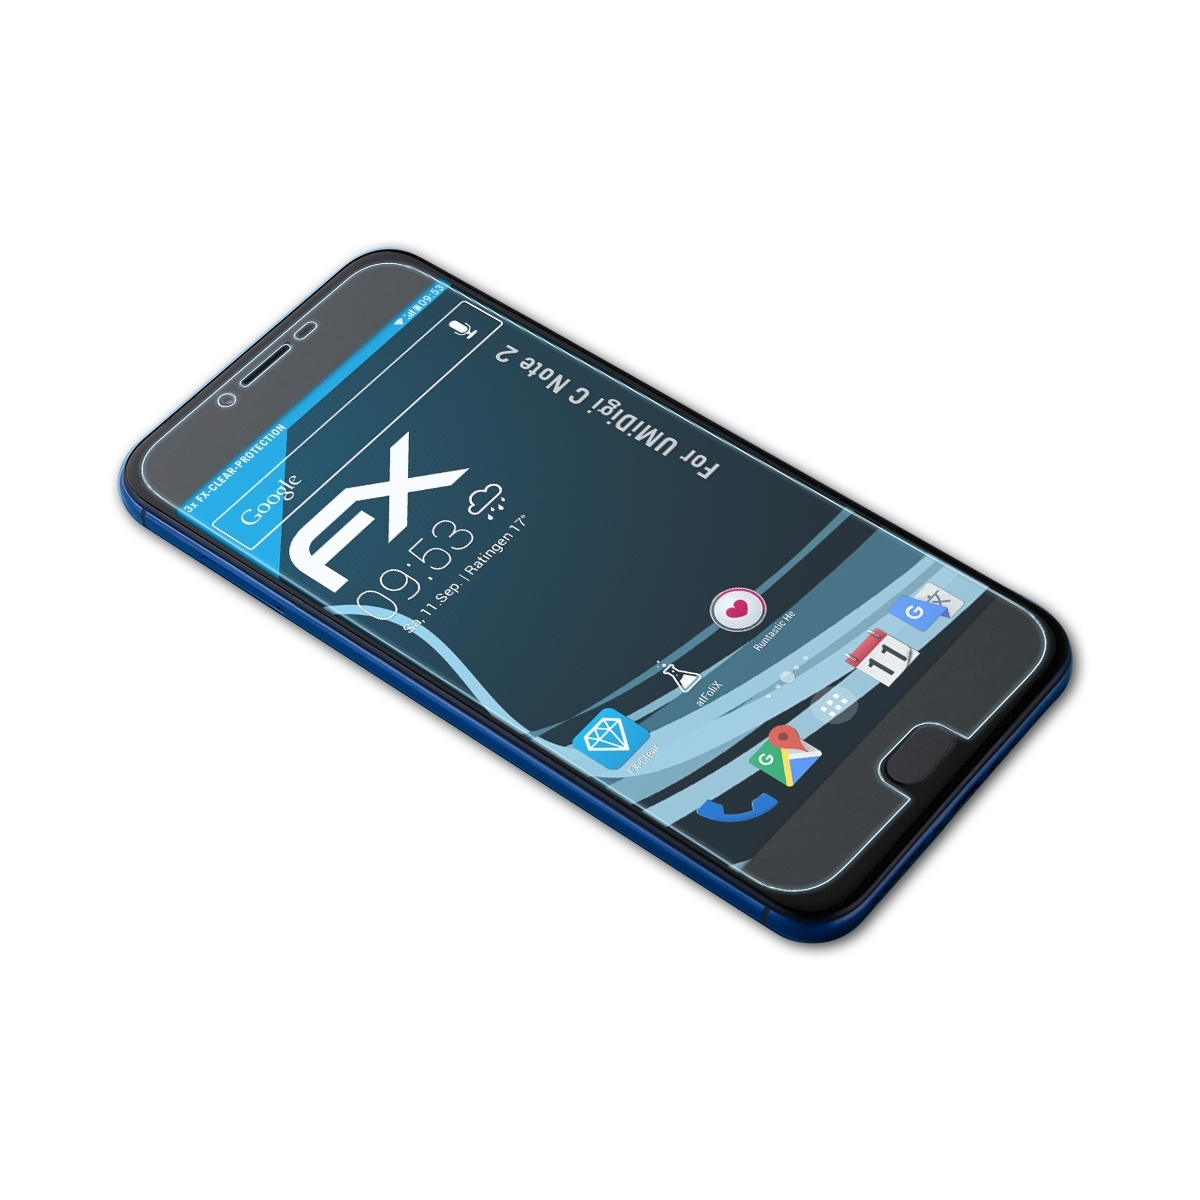 FX-Clear 2) UMiDigi Note 3x ATFOLIX Displayschutz(für C